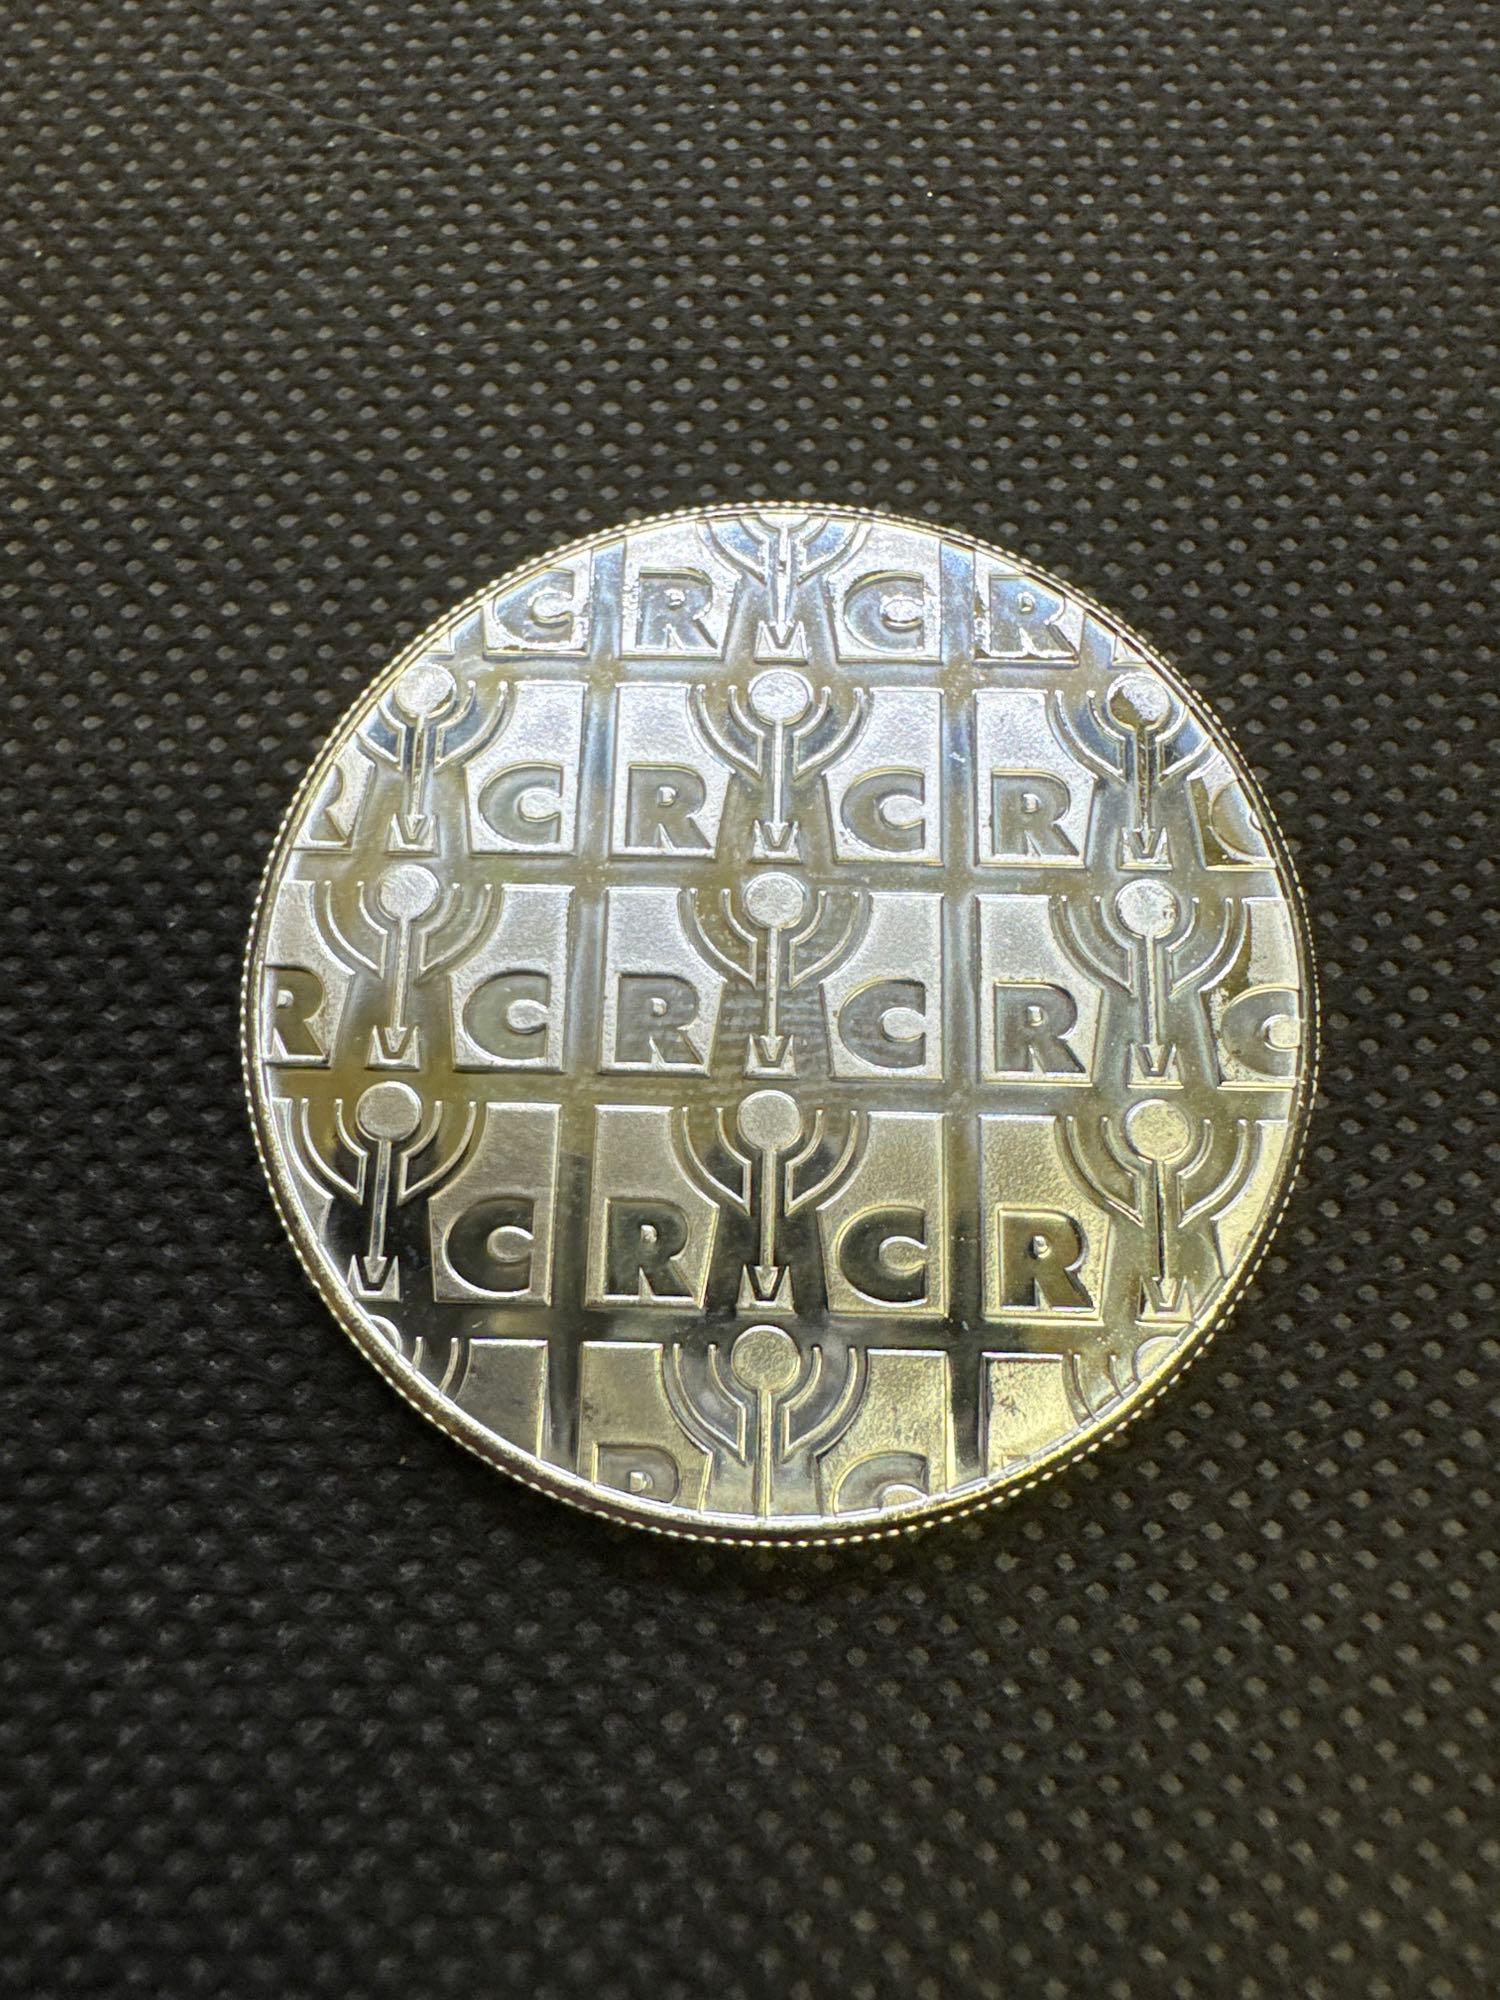 2x RMC 1 Troy Ounce .999 Fine Silver Bullion Coins 2.20 Oz